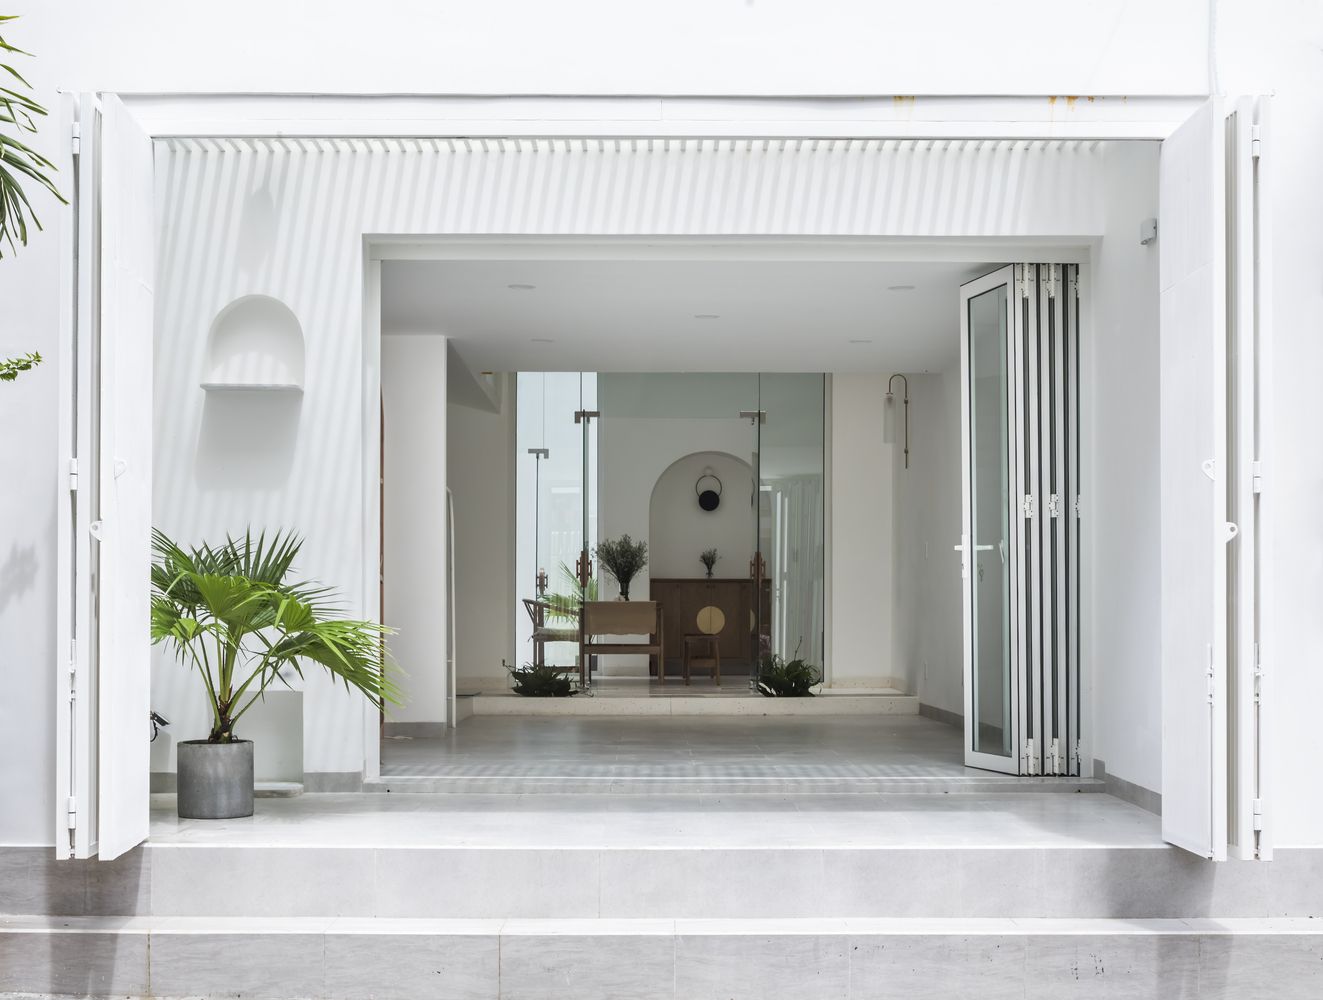 Những bậc tam cấp dẫn lối chúng ta vào thăm ngôi nhà thiết kế theo phong cách tối giản kết hợp nội thất hơi hướng văn hóa Trung Hoa giữa lòng Sài Thành.